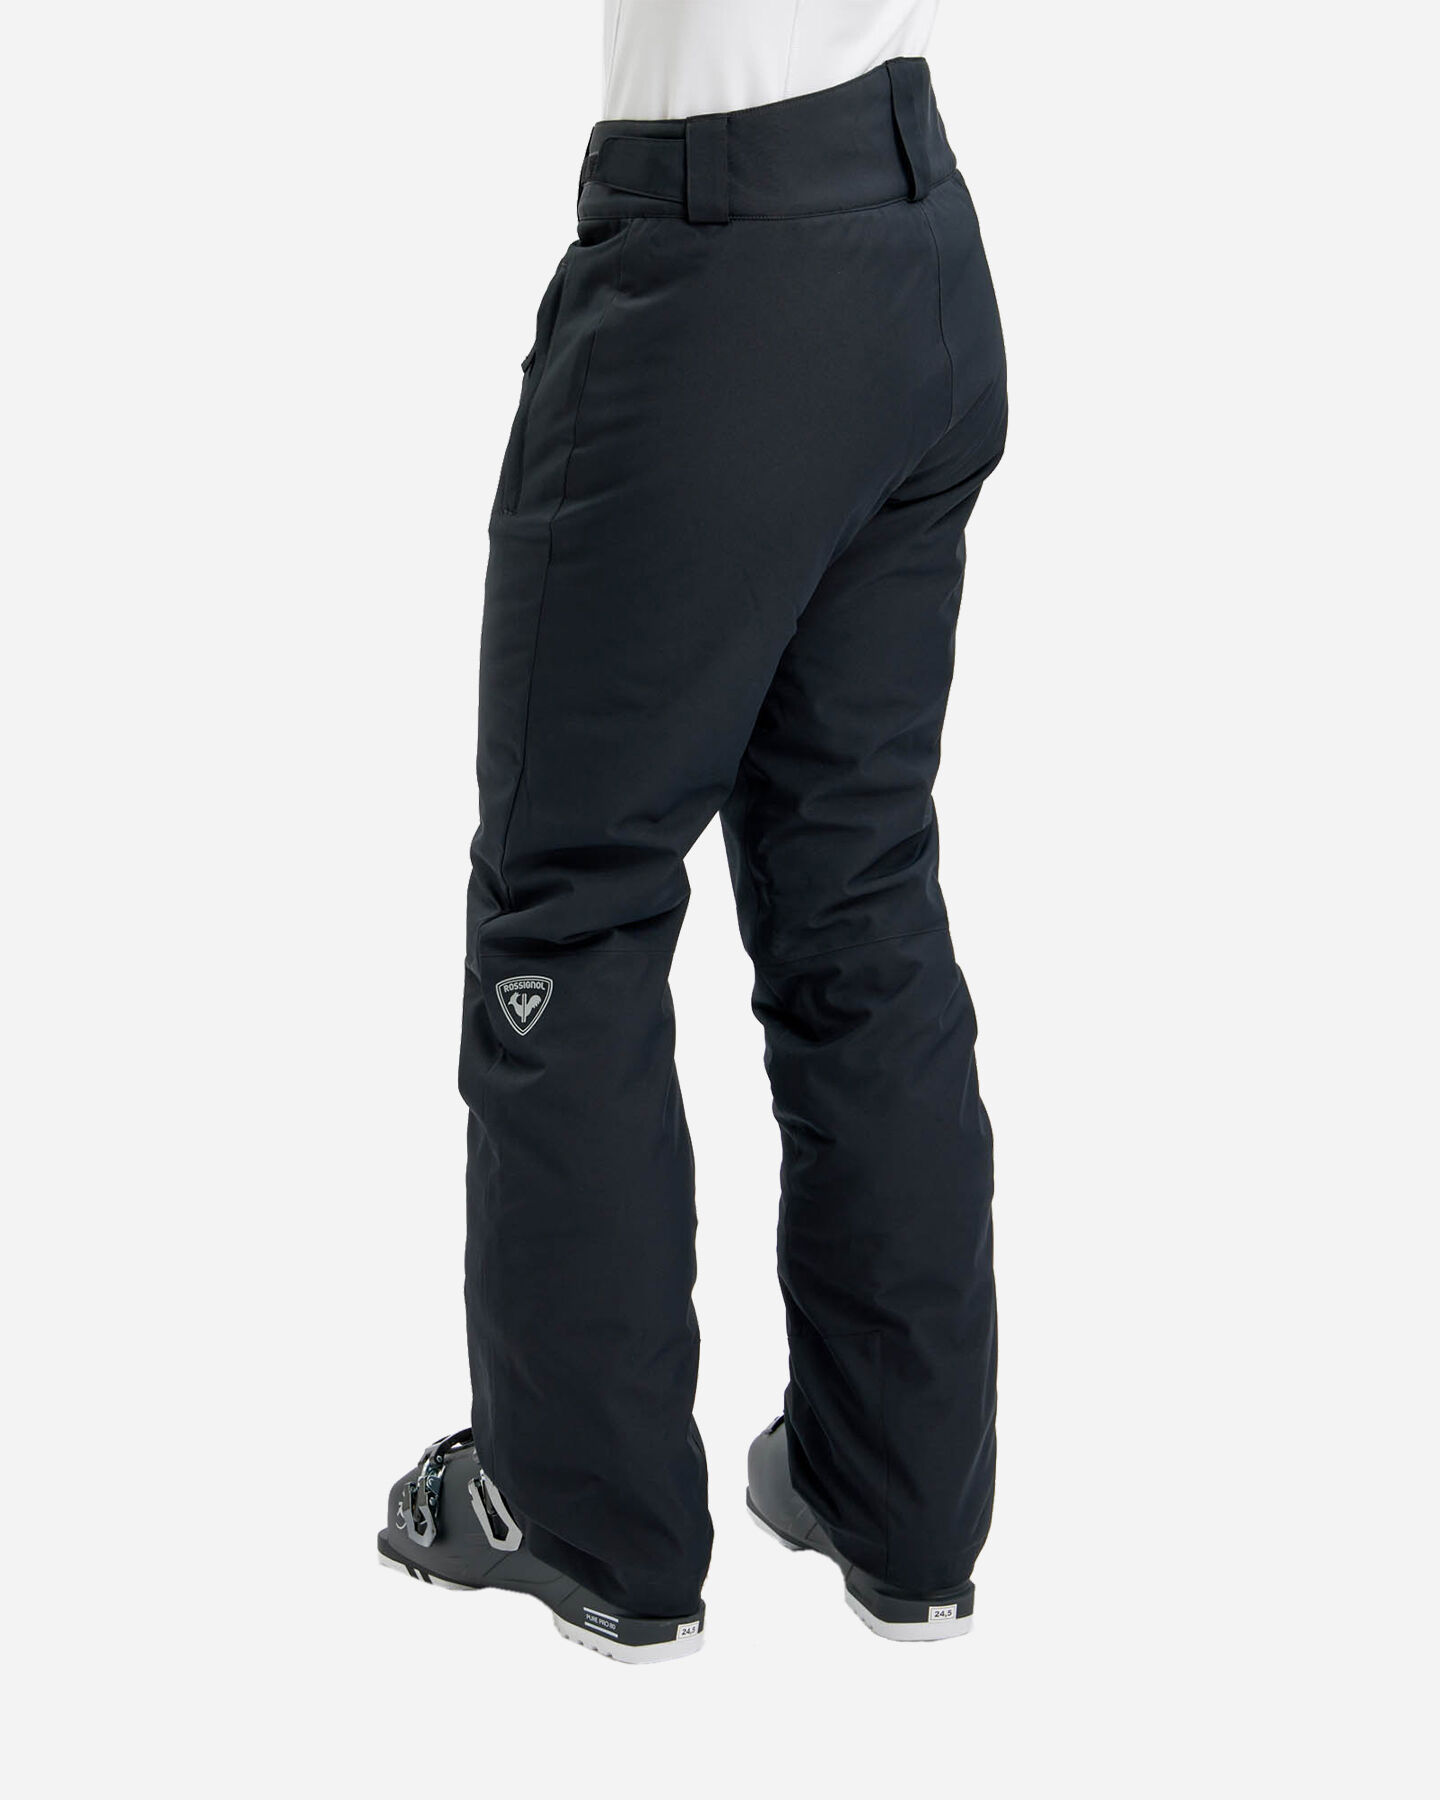  Pantalone sci ROSSIGNOL PODIUM W S4117748|200|XS scatto 1